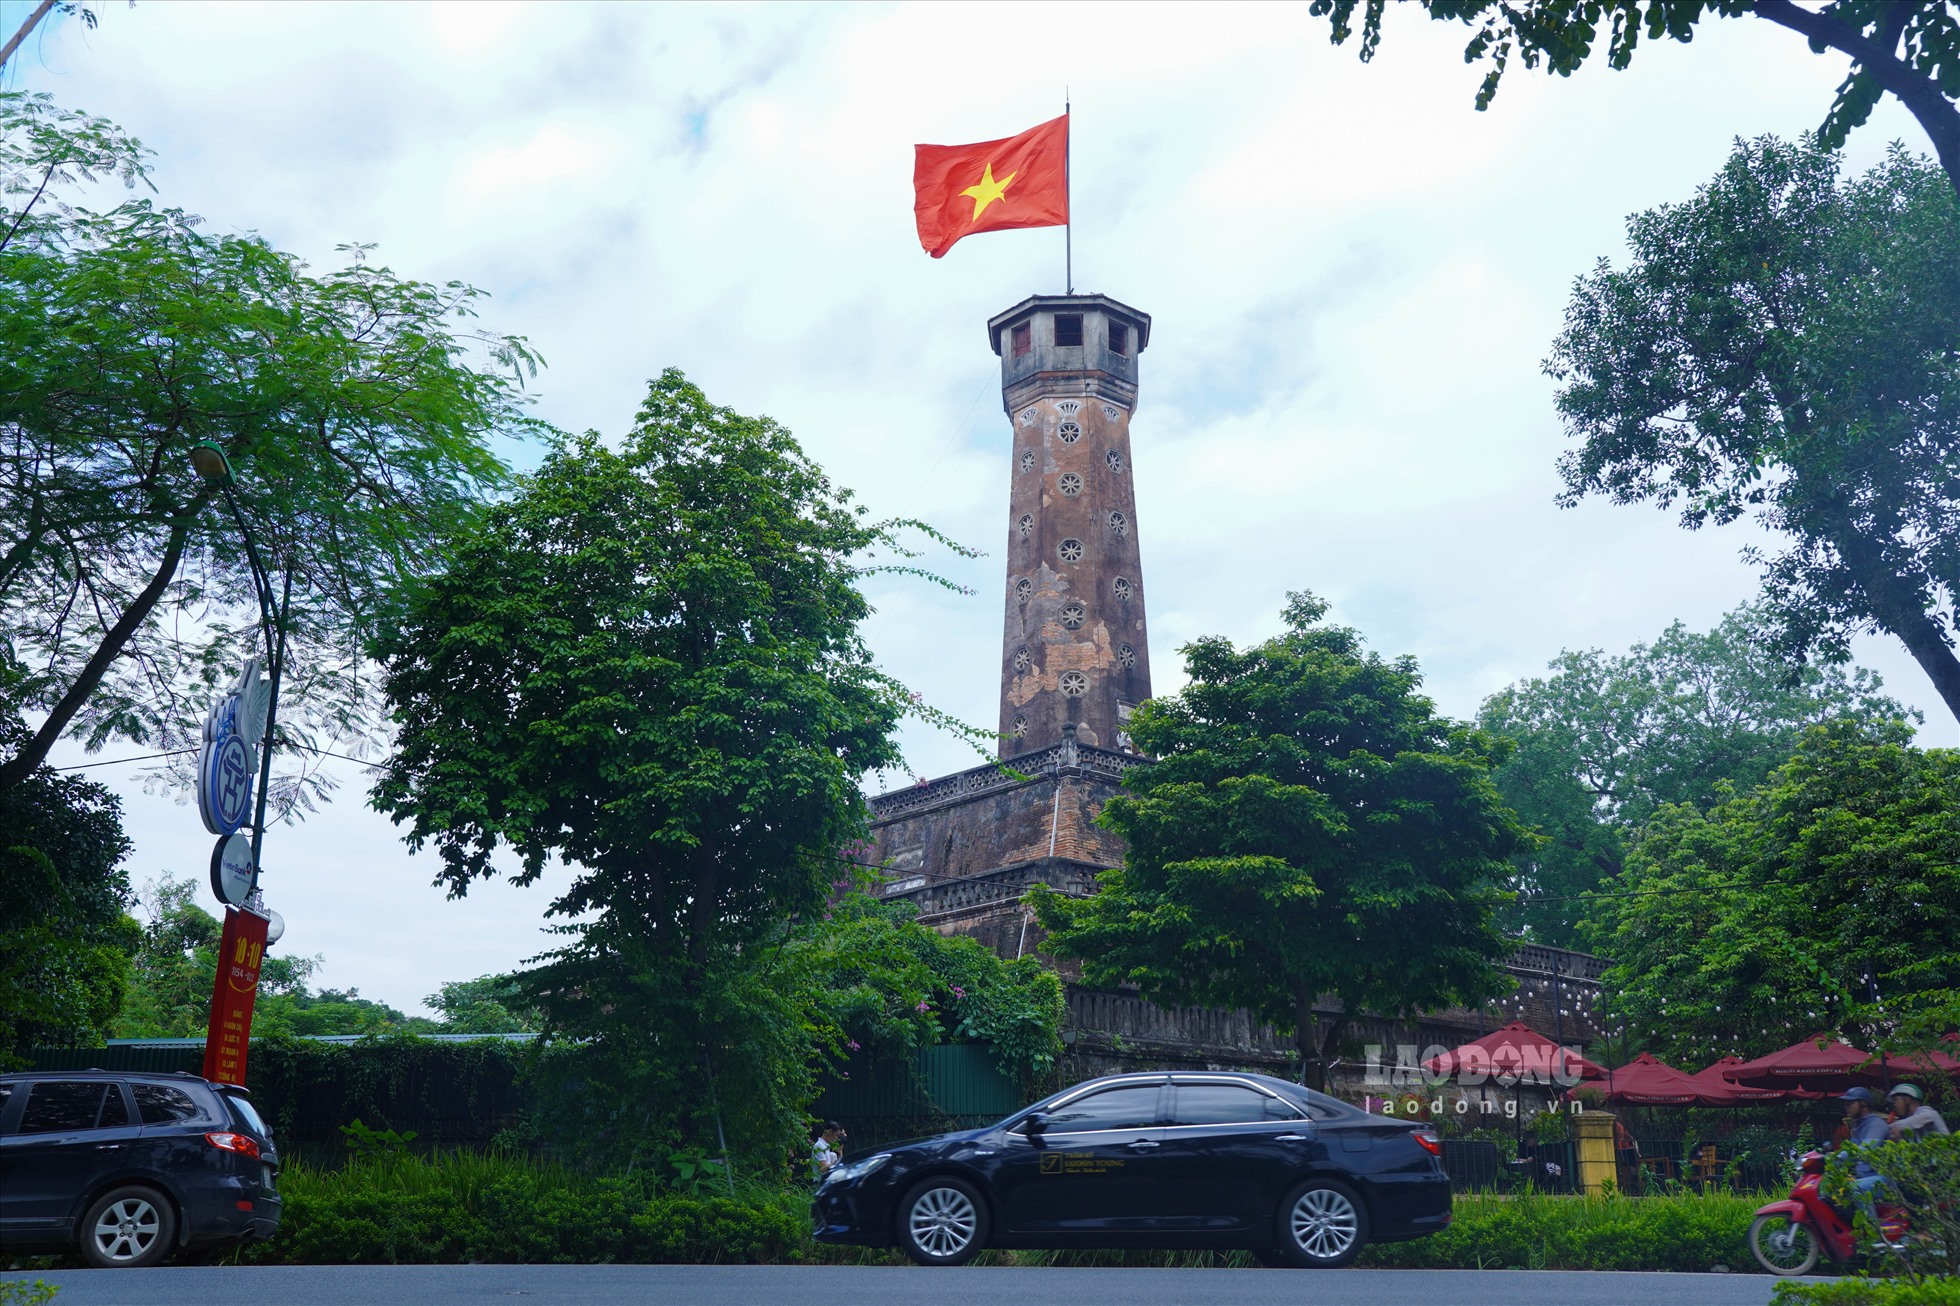 Cột cờ Hà Nội hay còn gọi là Kỳ đài Hà Nội được xây dựng dưới triều Nguyễn, nơi đây đã diễn ra lễ thượng cờ lịch sử chiều 10.10.1954.